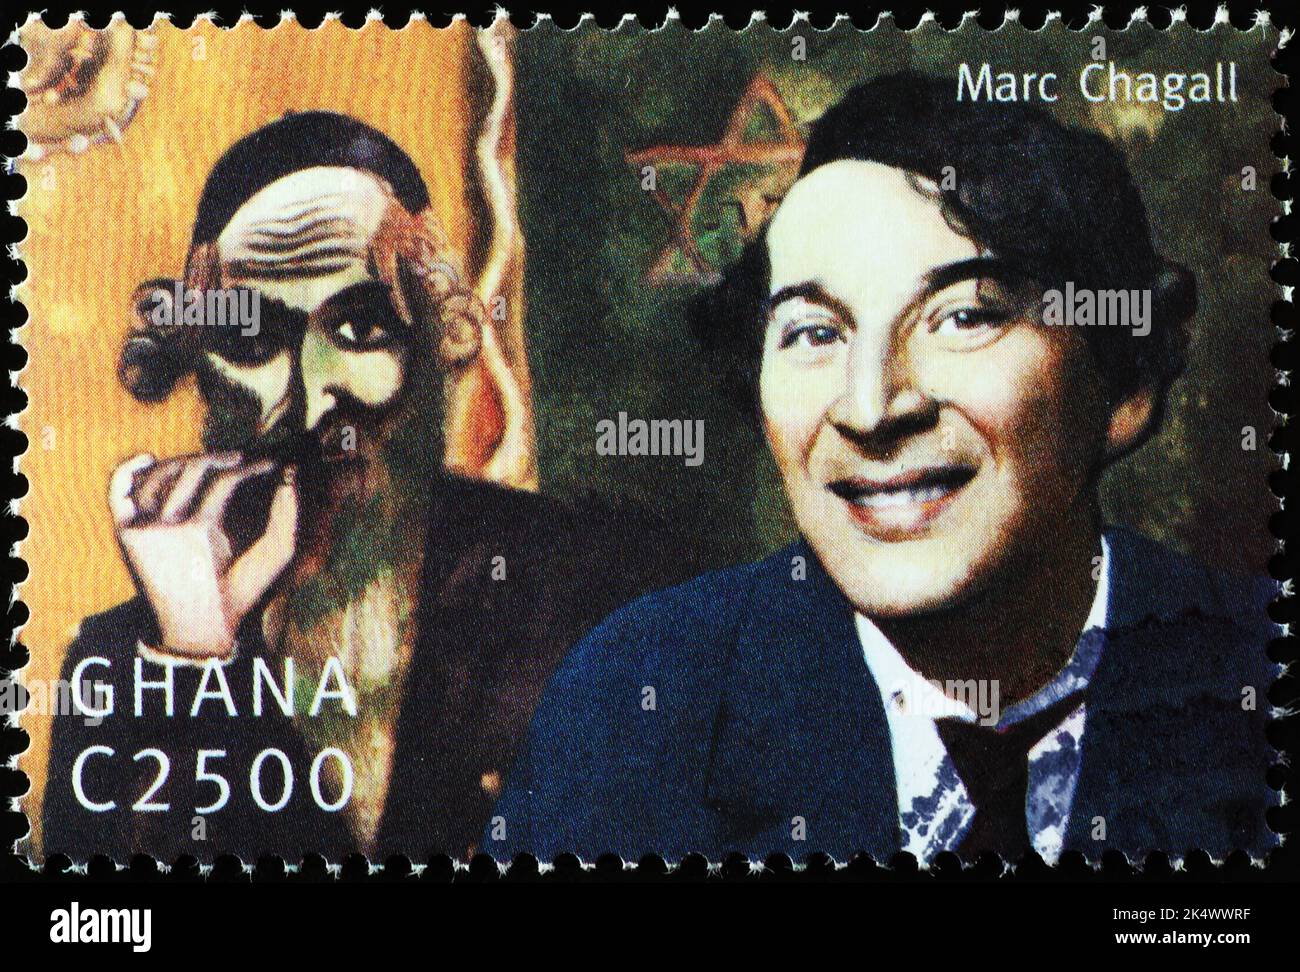 Marc Chagall Porträt auf Briefmarke Stockfoto